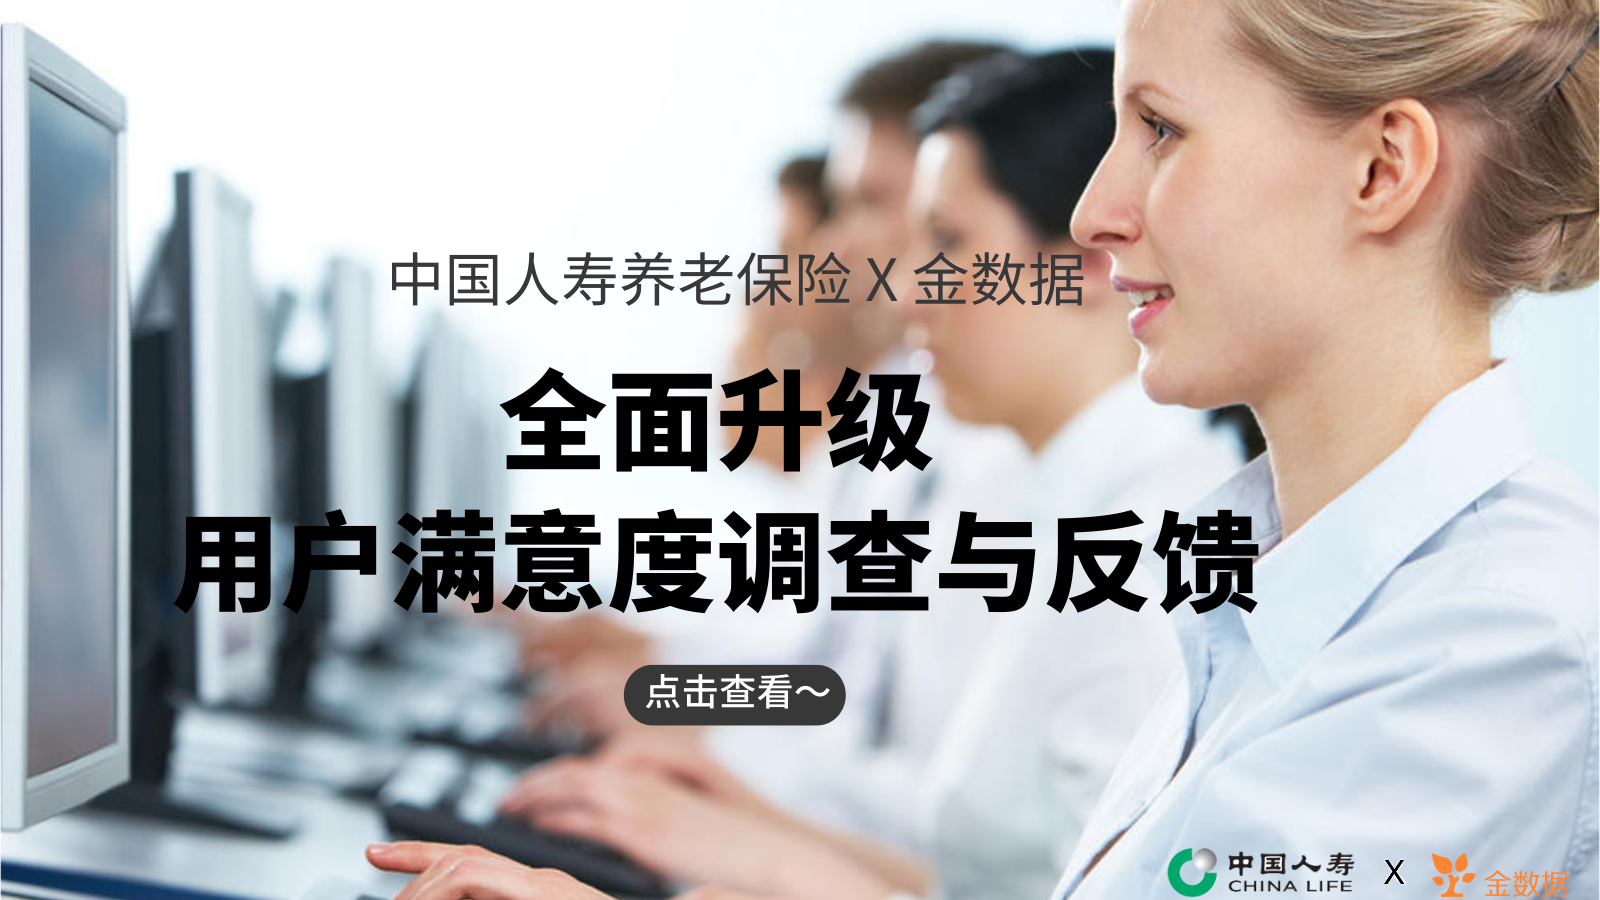 中国人寿养老保险 X 金数据 | 全面升级用户满意度调查与反馈